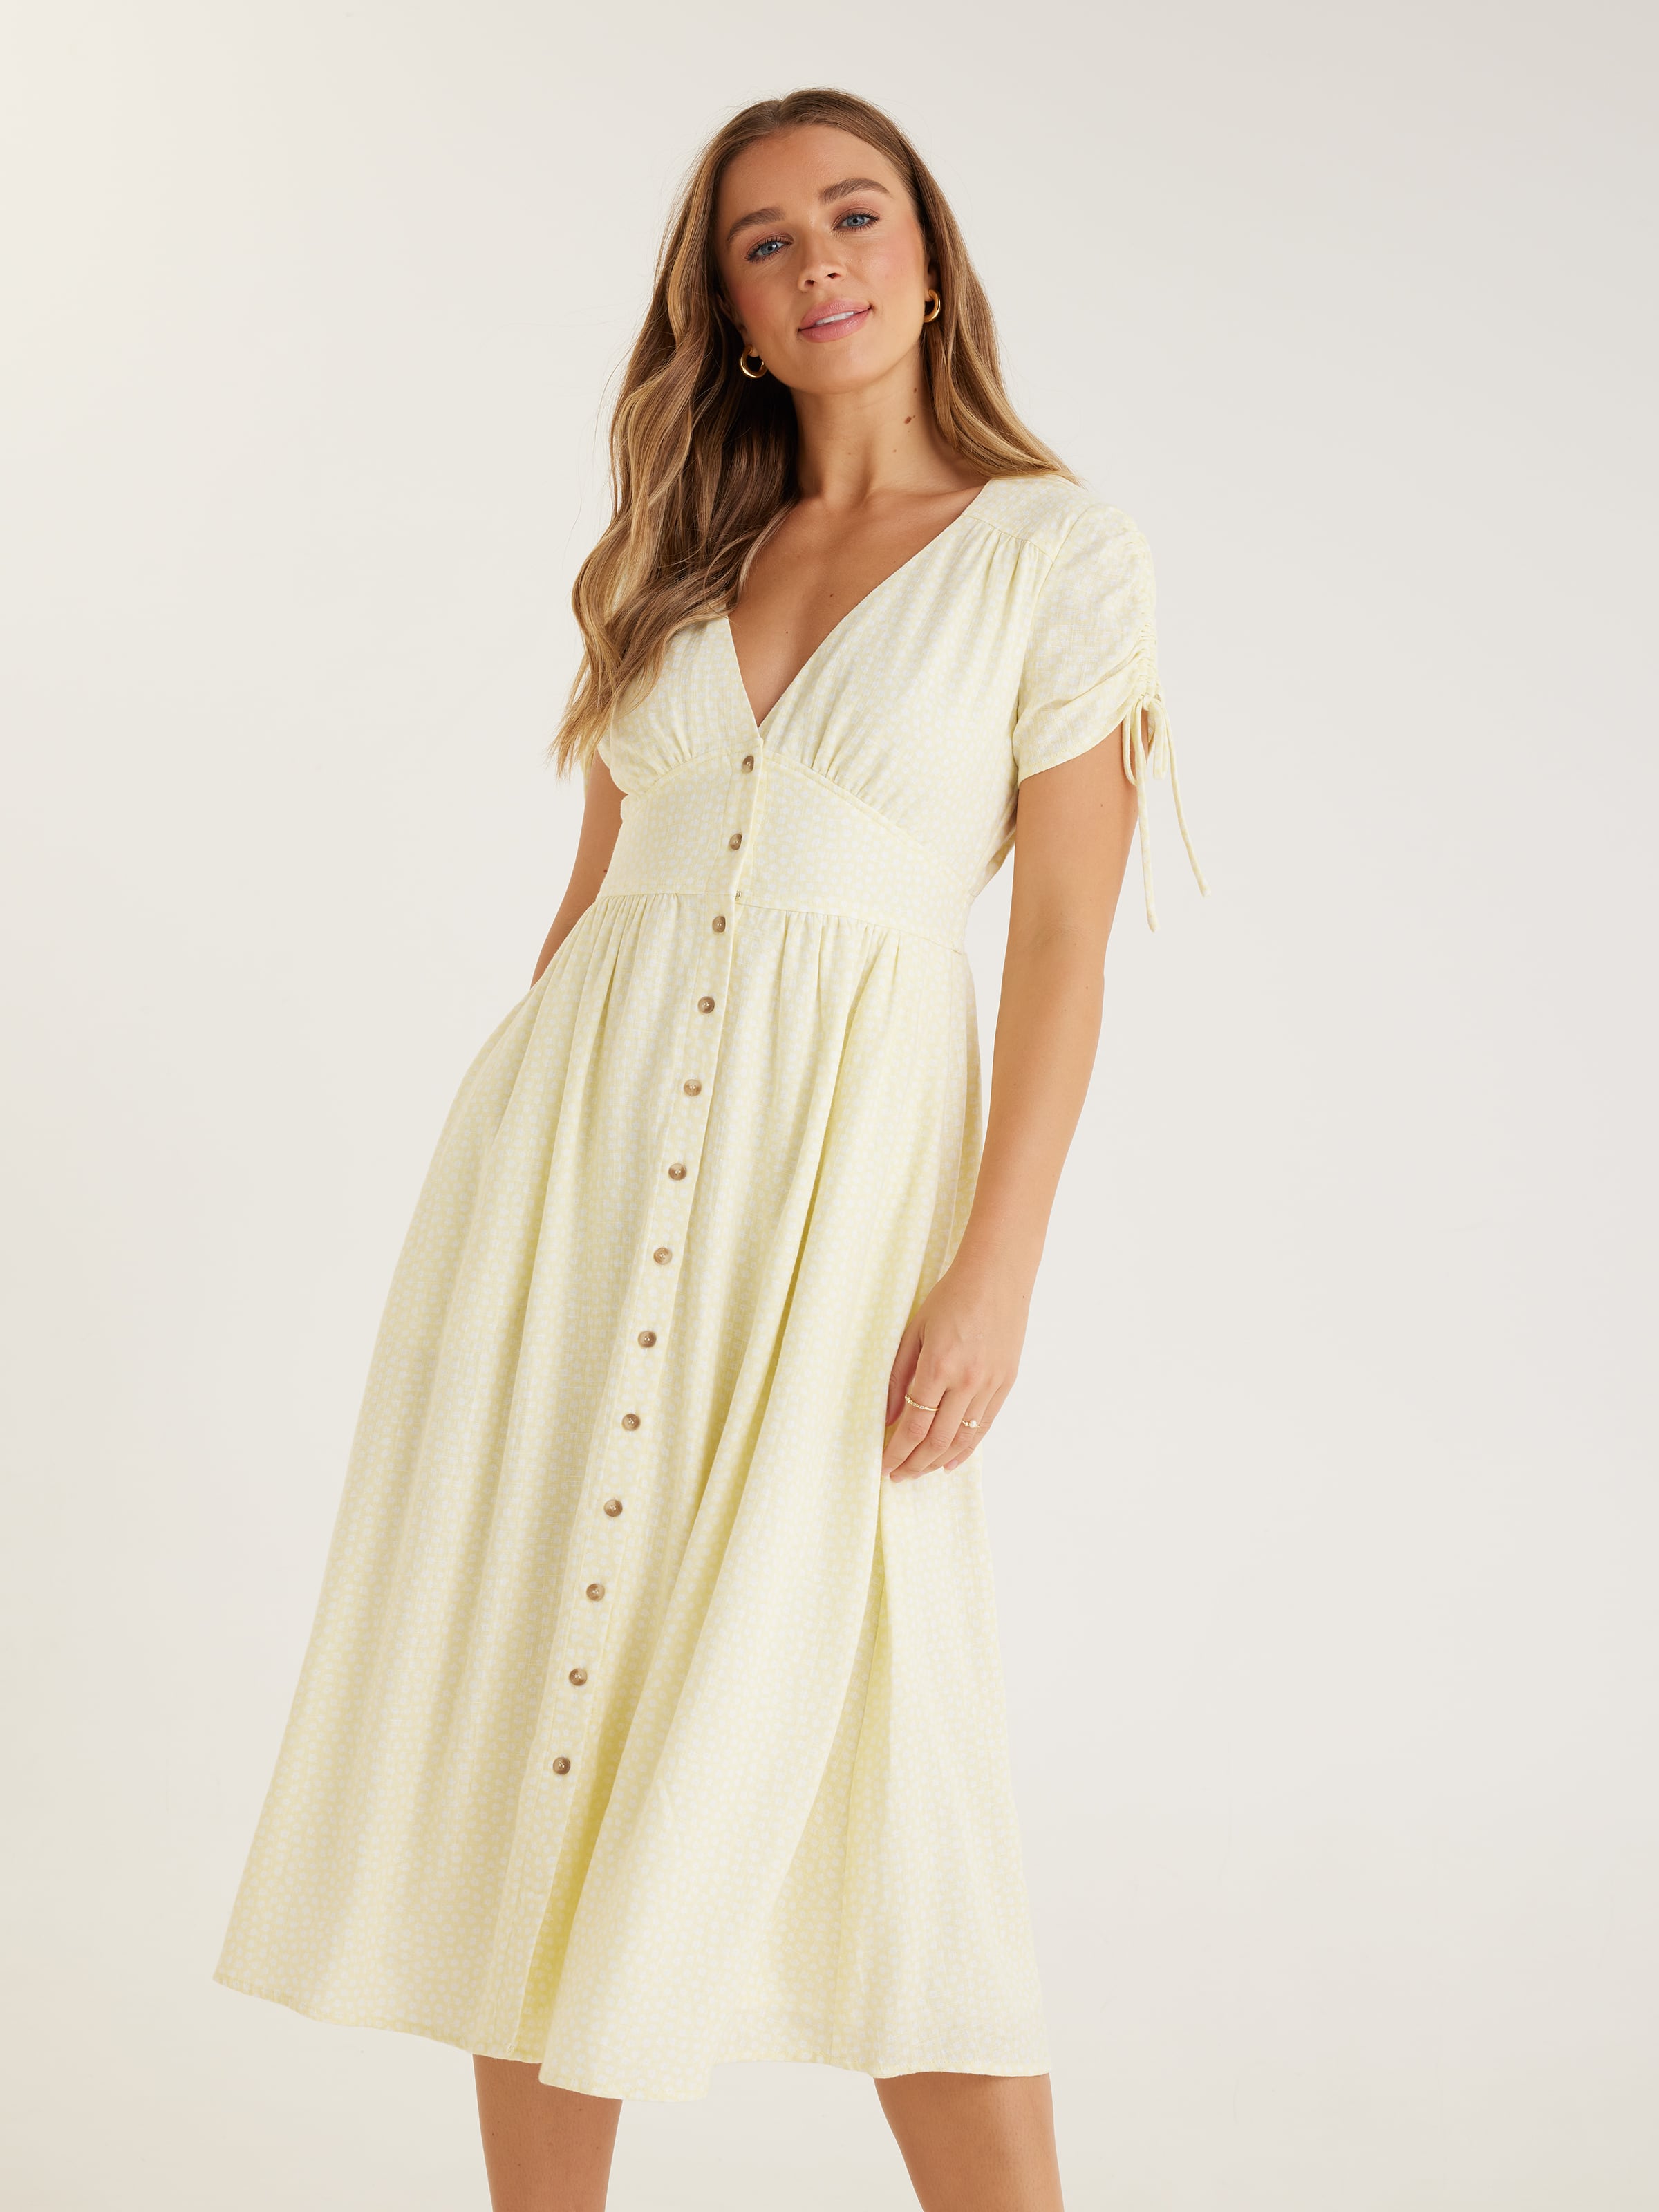 Buy Women Navy Print Casual Dress Online - 800439